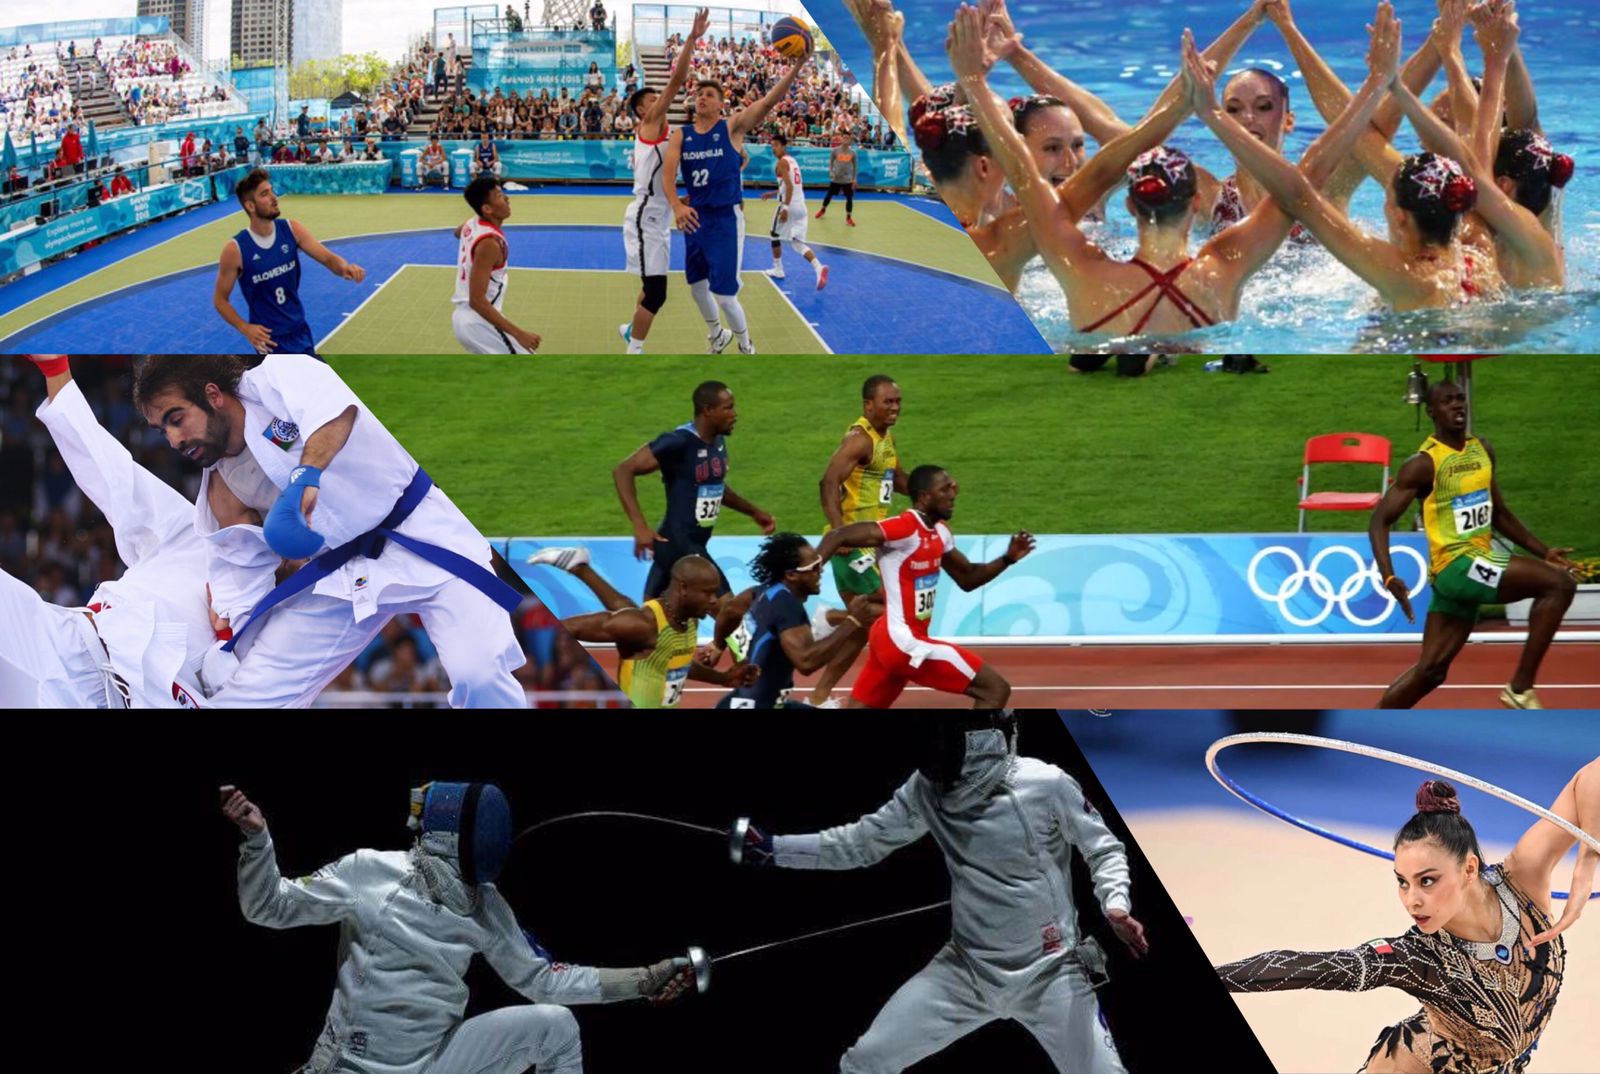 Cuál es el deporte más visto en los Juegos Olímpicos